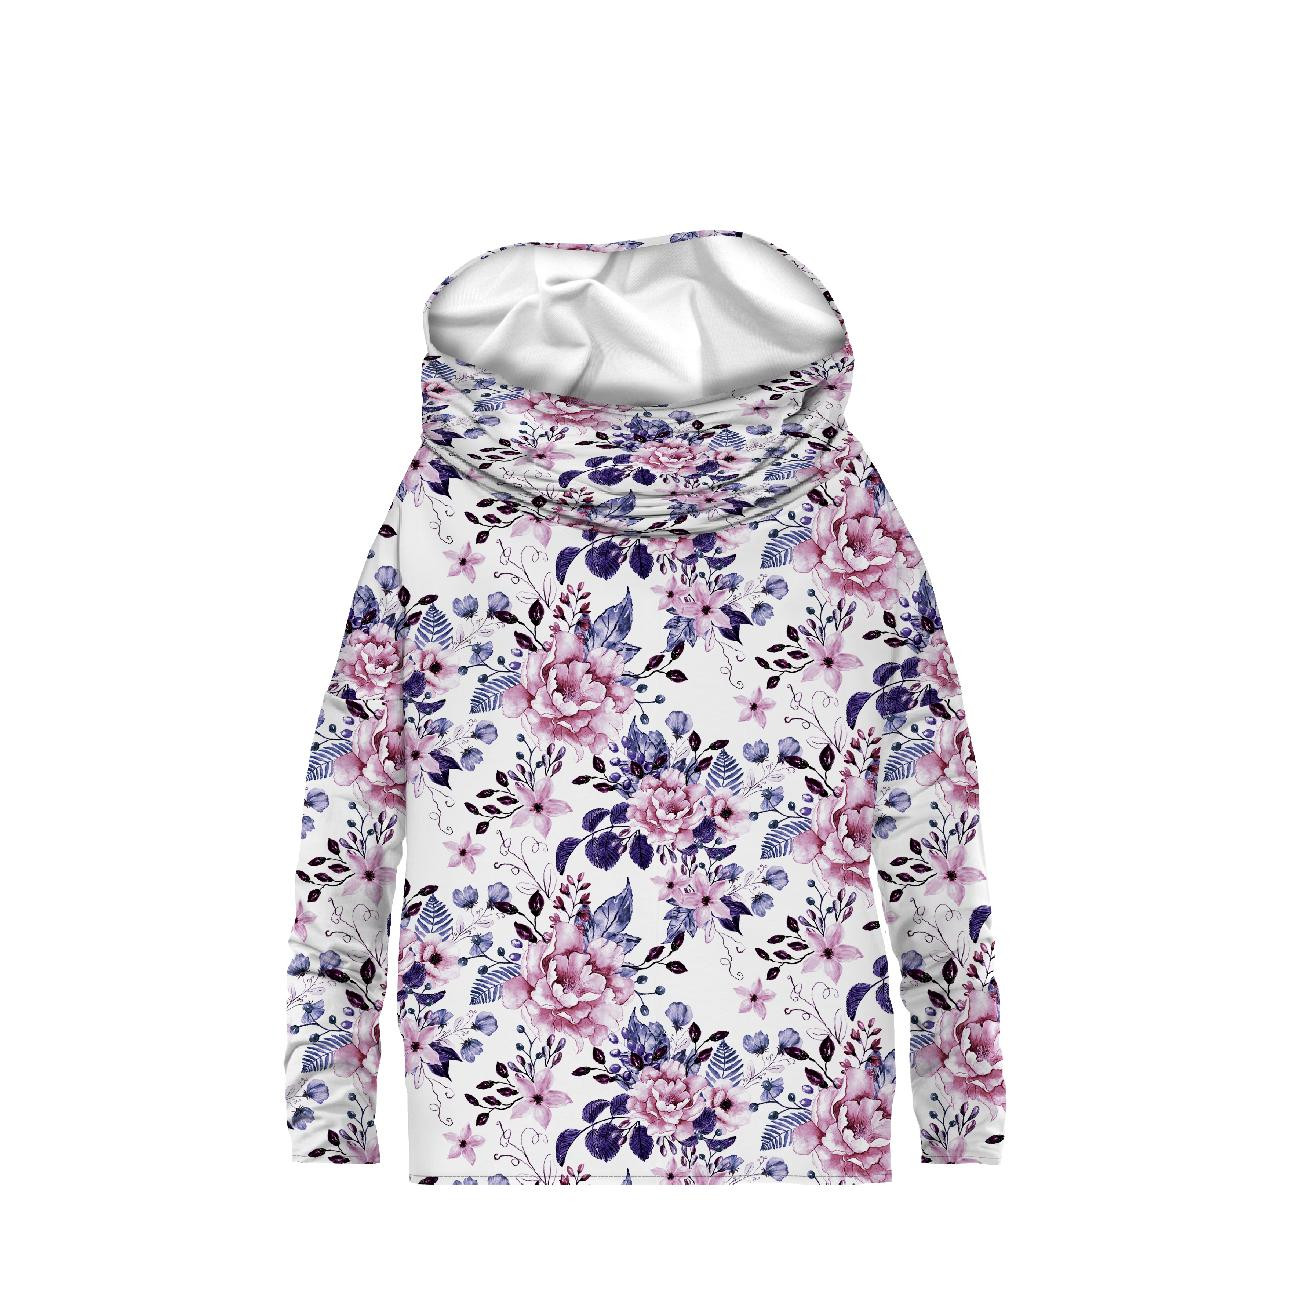 SNOOD SWEATSHIRT (FURIA) - WILD ROSE FLOWERS PAT. 1 (BLOOMING MEADOW) (Very Peri) - looped knit fabric 